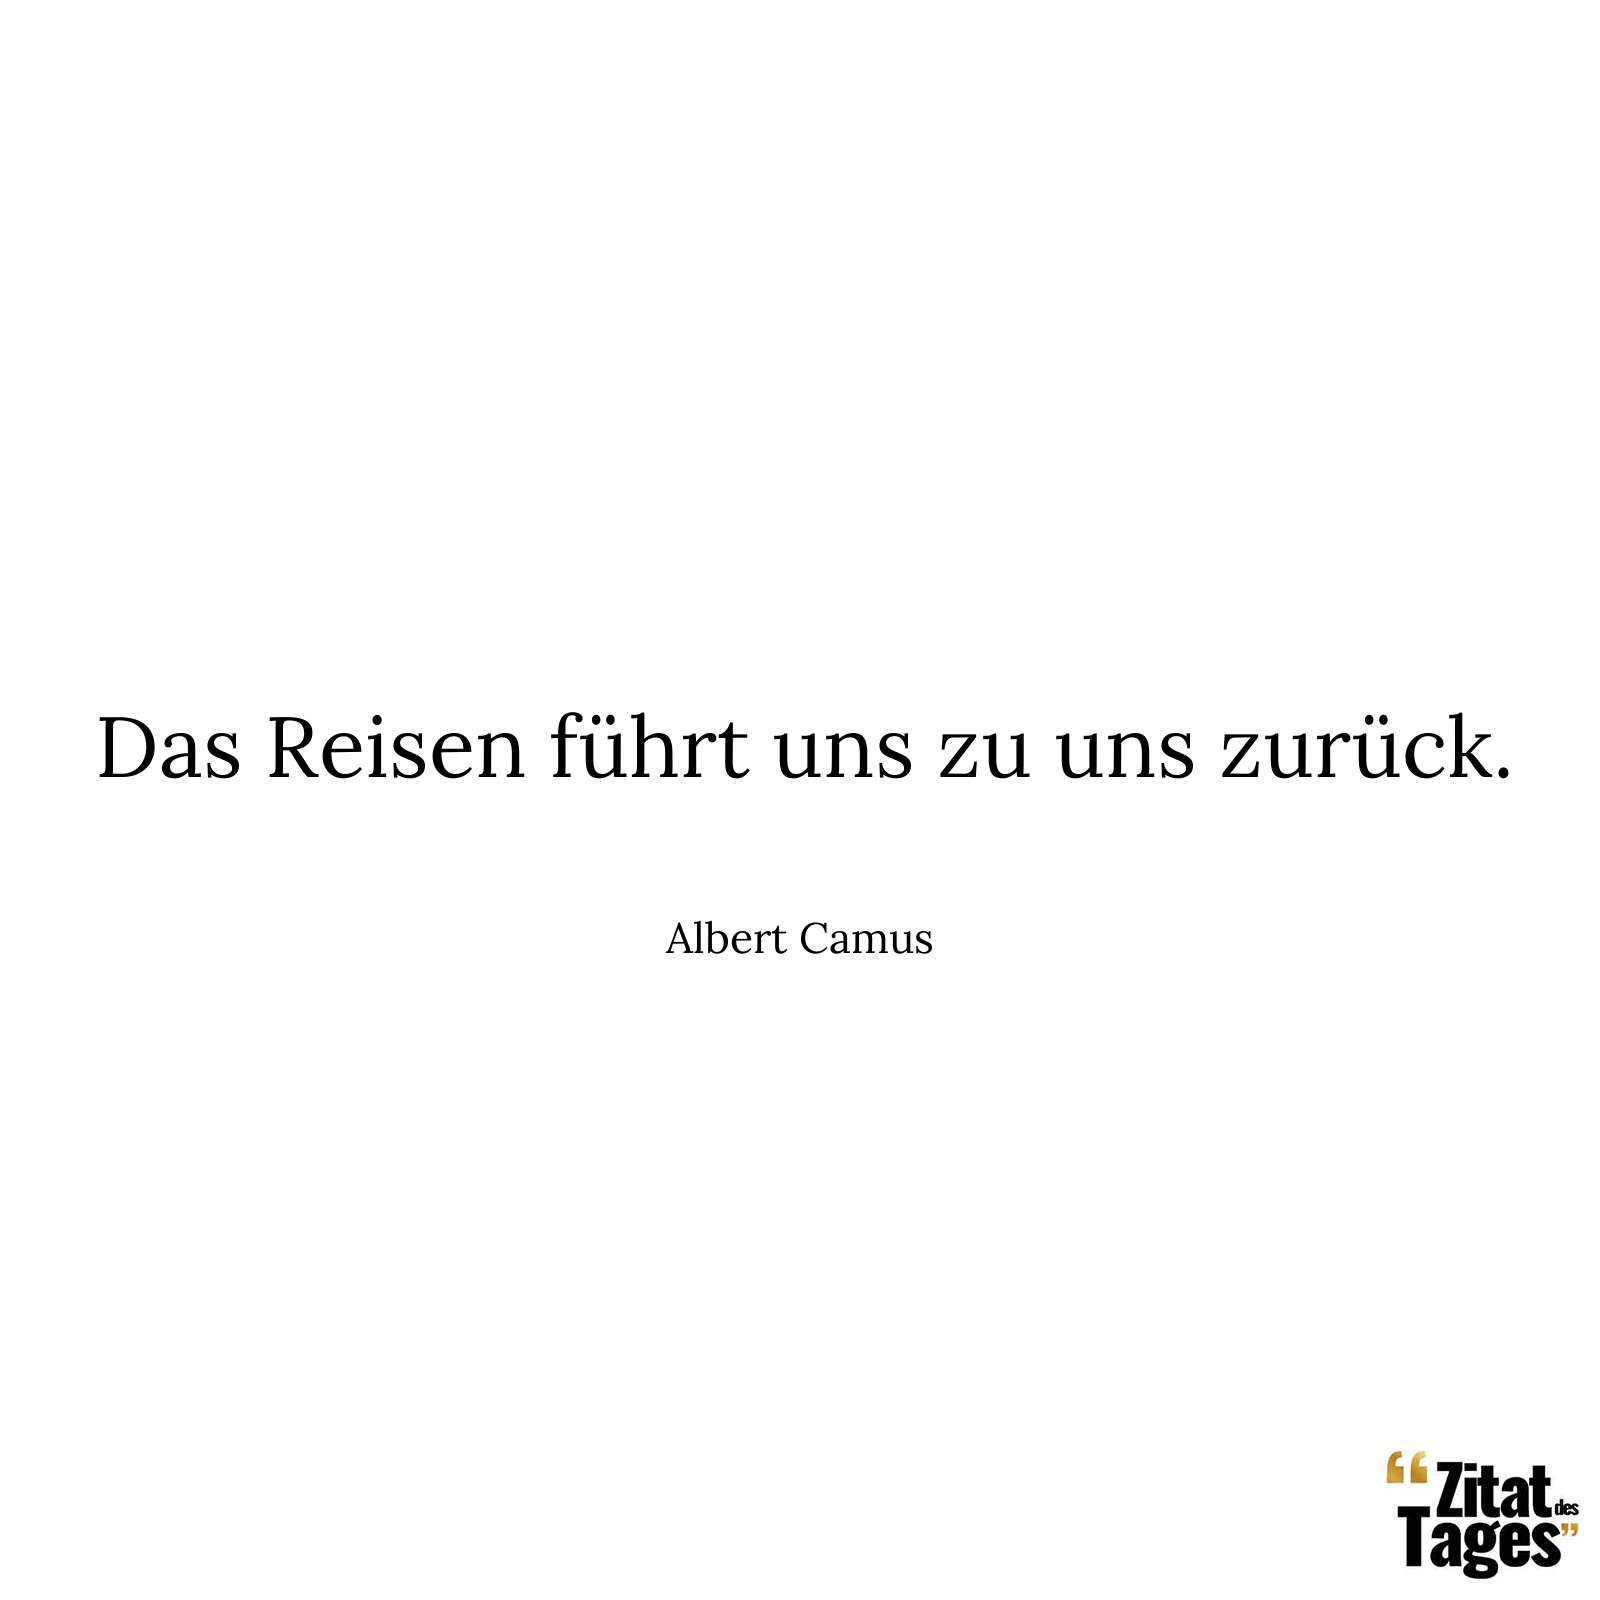 Das Reisen führt uns zu uns zurück. - Albert Camus